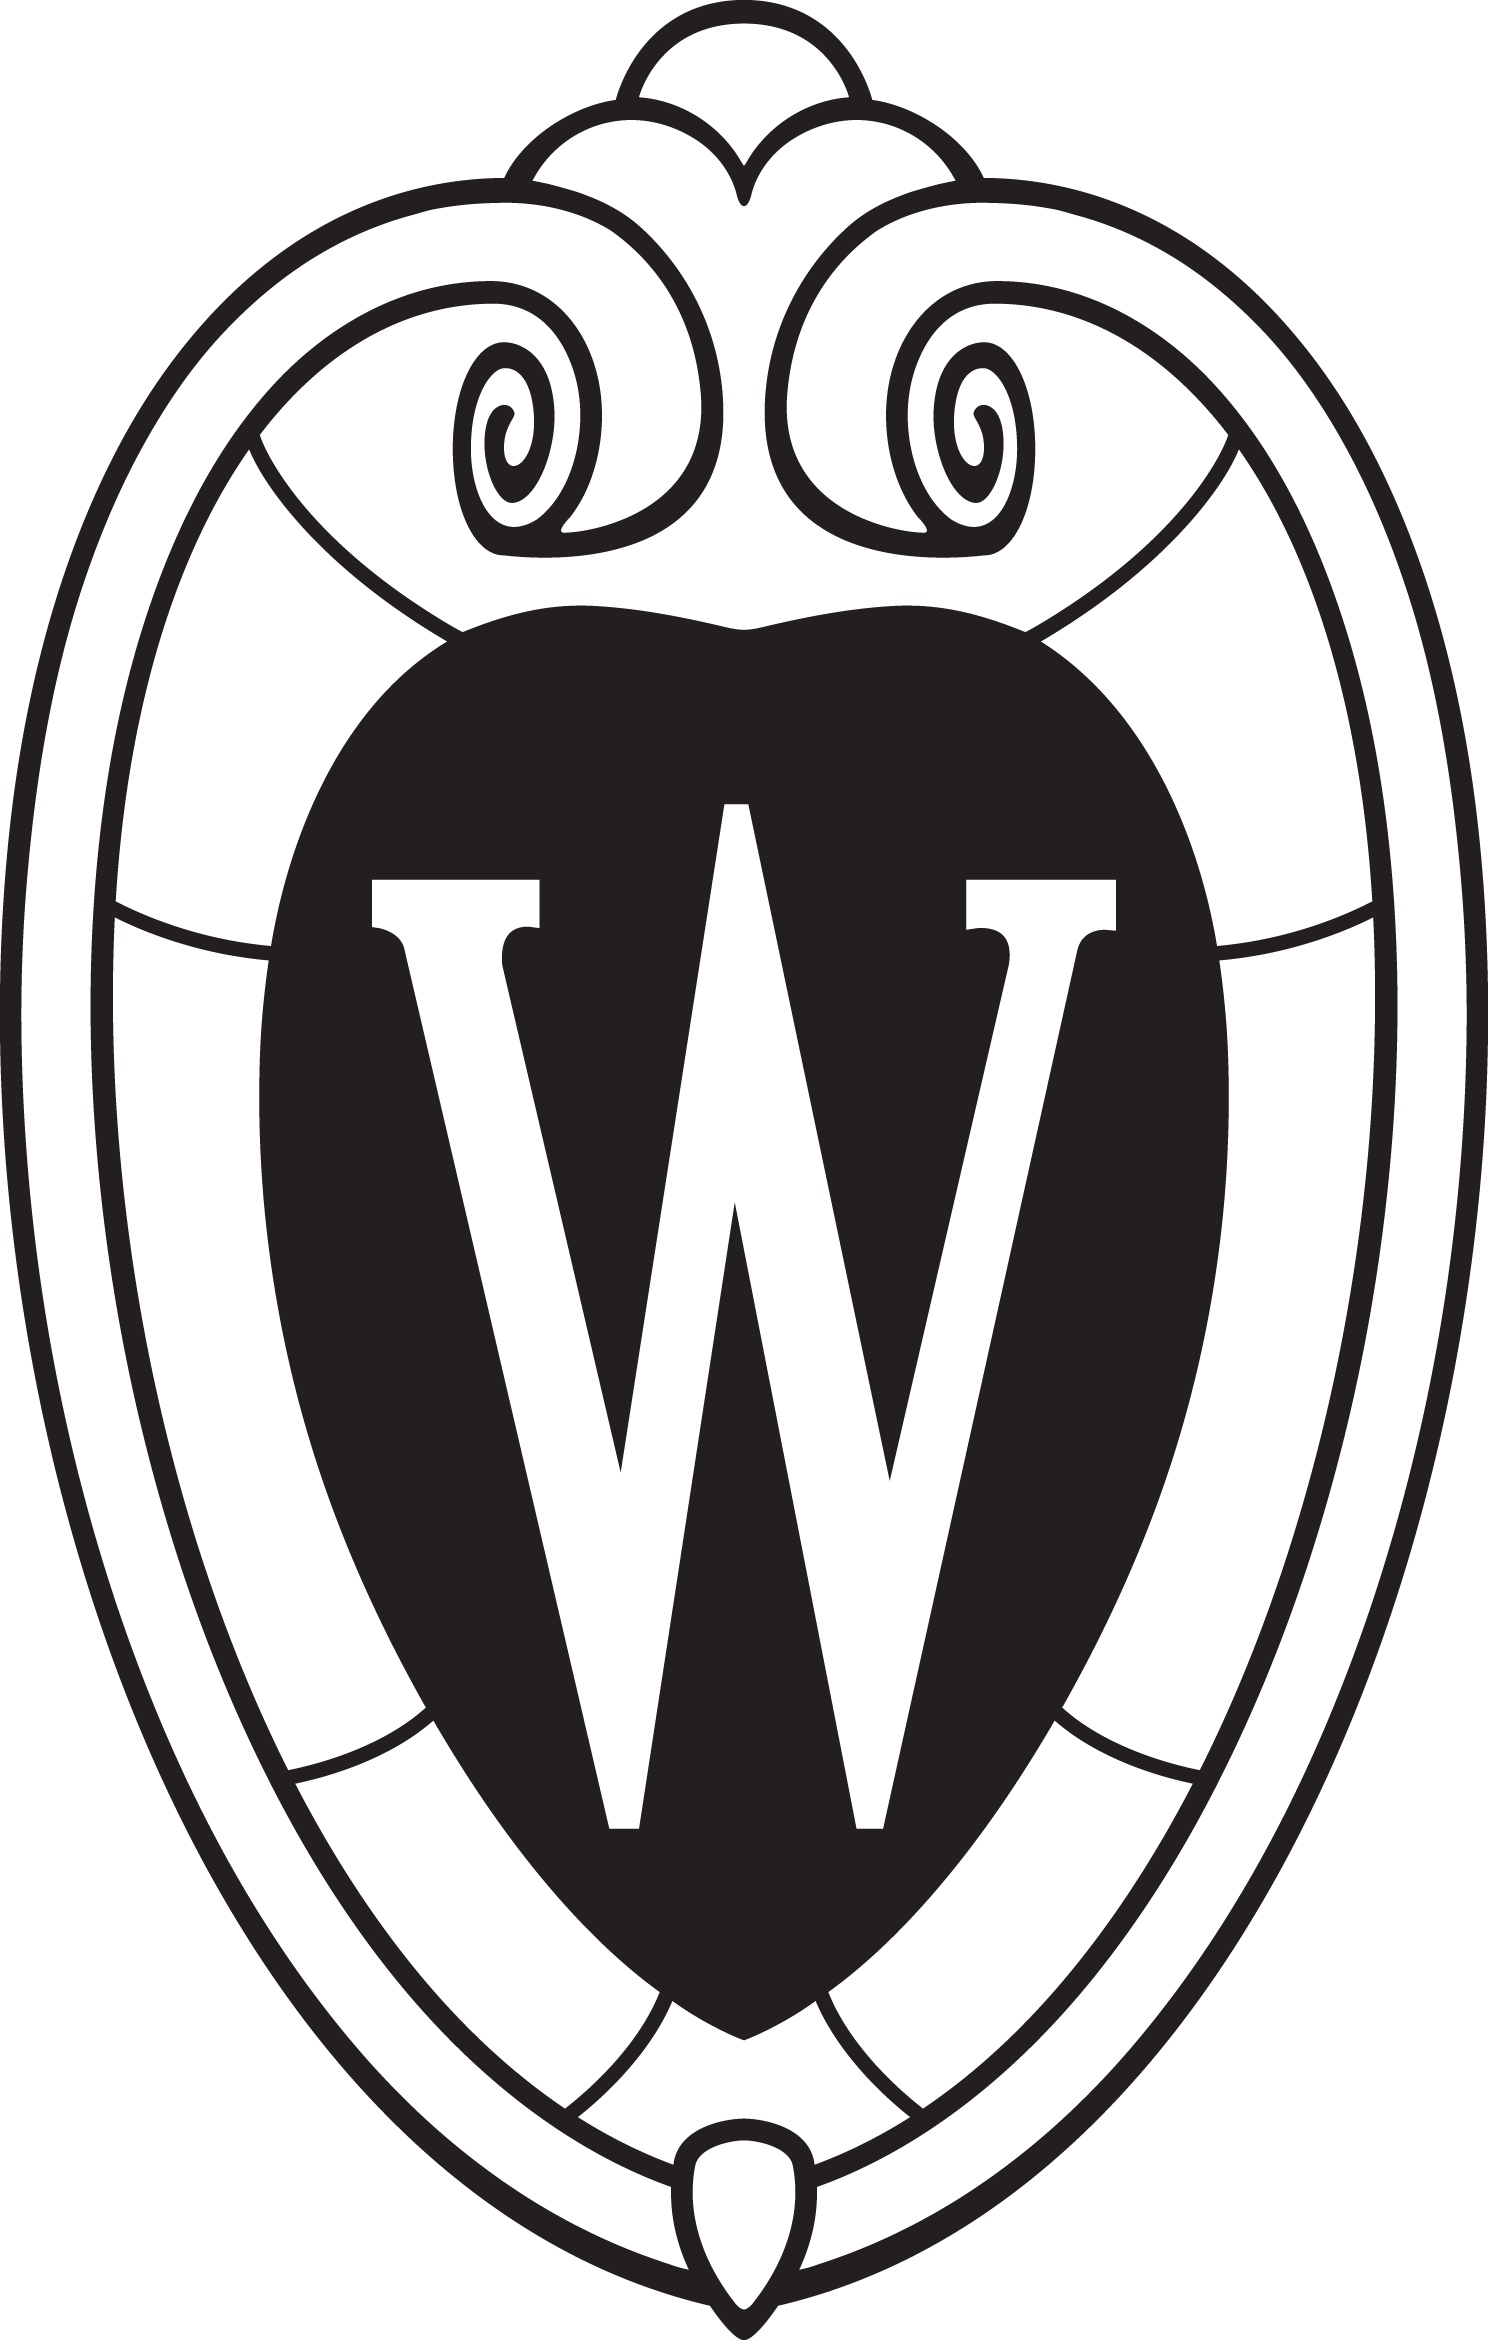 UW Madison icon